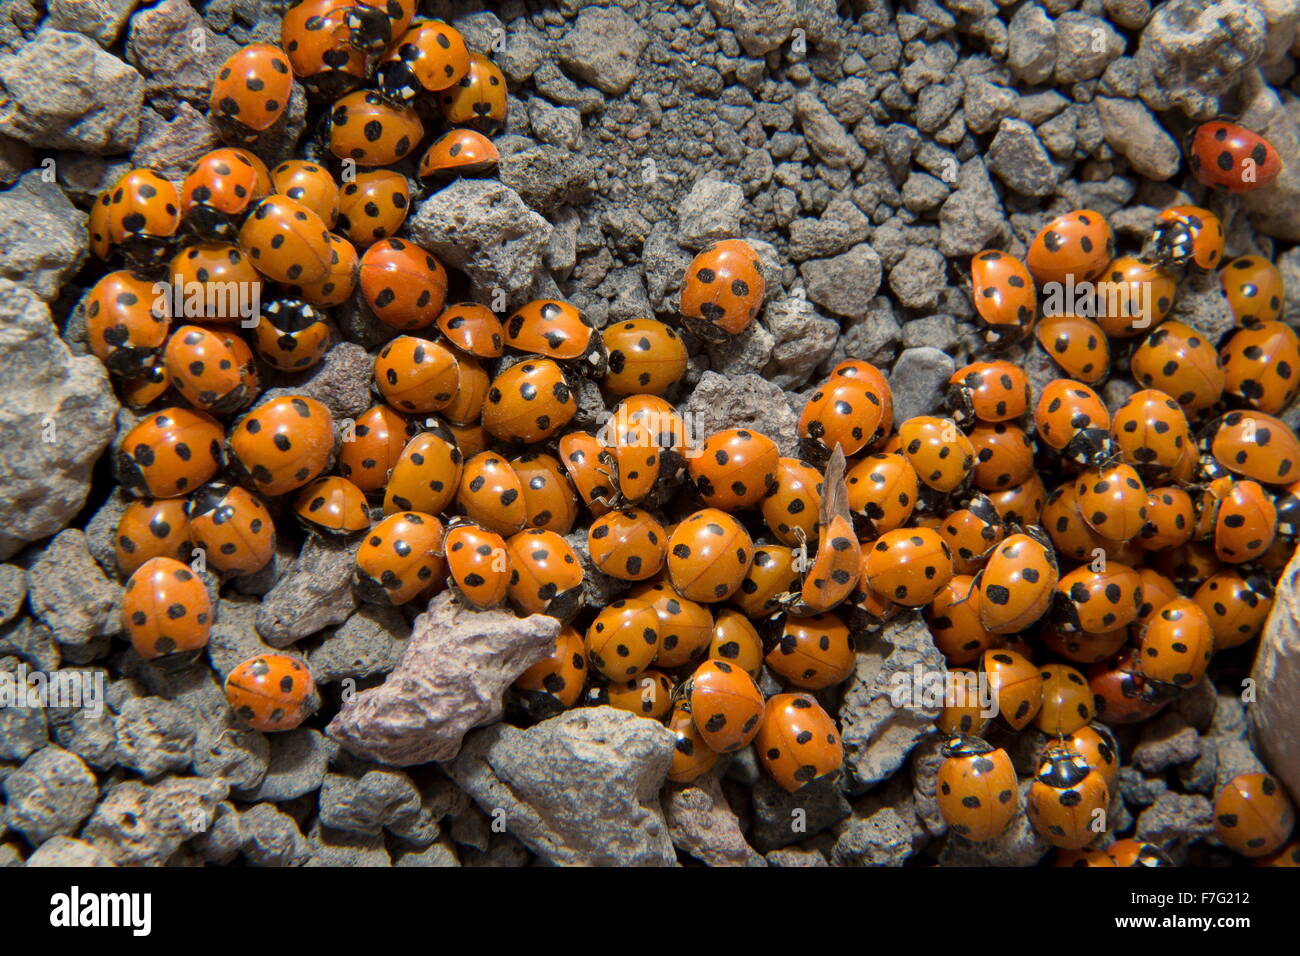 7-spot ladybird, Coccinella septempunctata, en grappe dense au cours de la migration de masse. Lanzarote. Banque D'Images